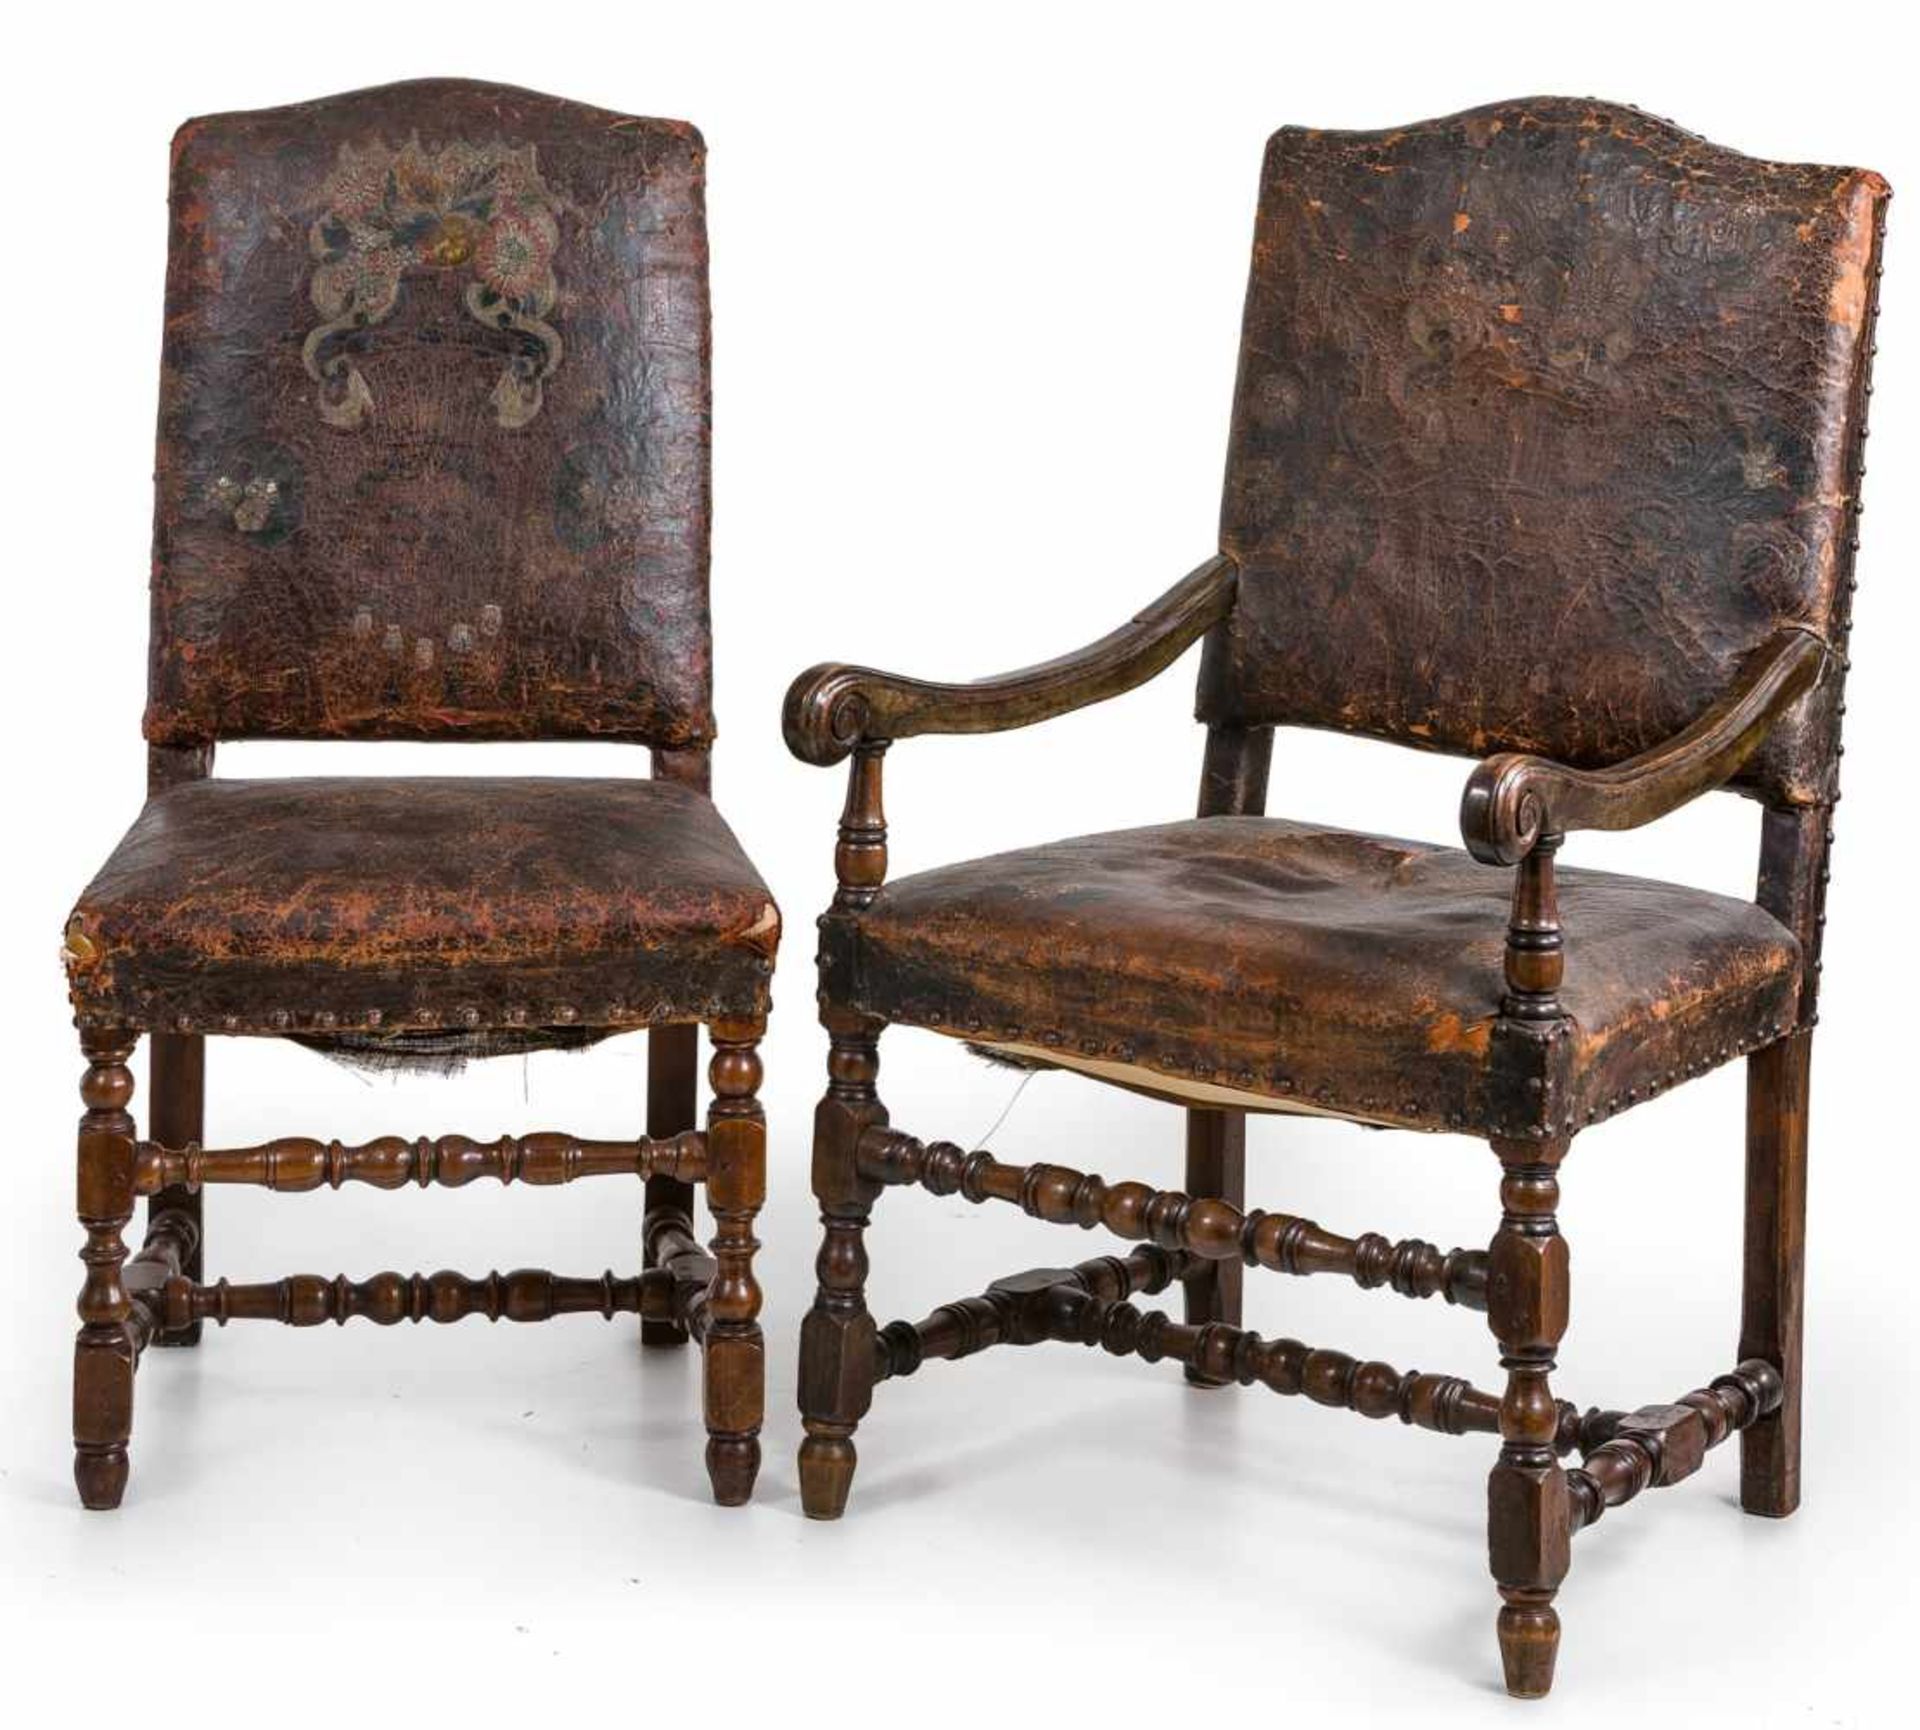 Sechs Stühle u. zwei Armlehnstühle Louis XIII wohl 17. Jh.Nussbaum. Balusterbeine mit H-förmiger - Image 2 of 2